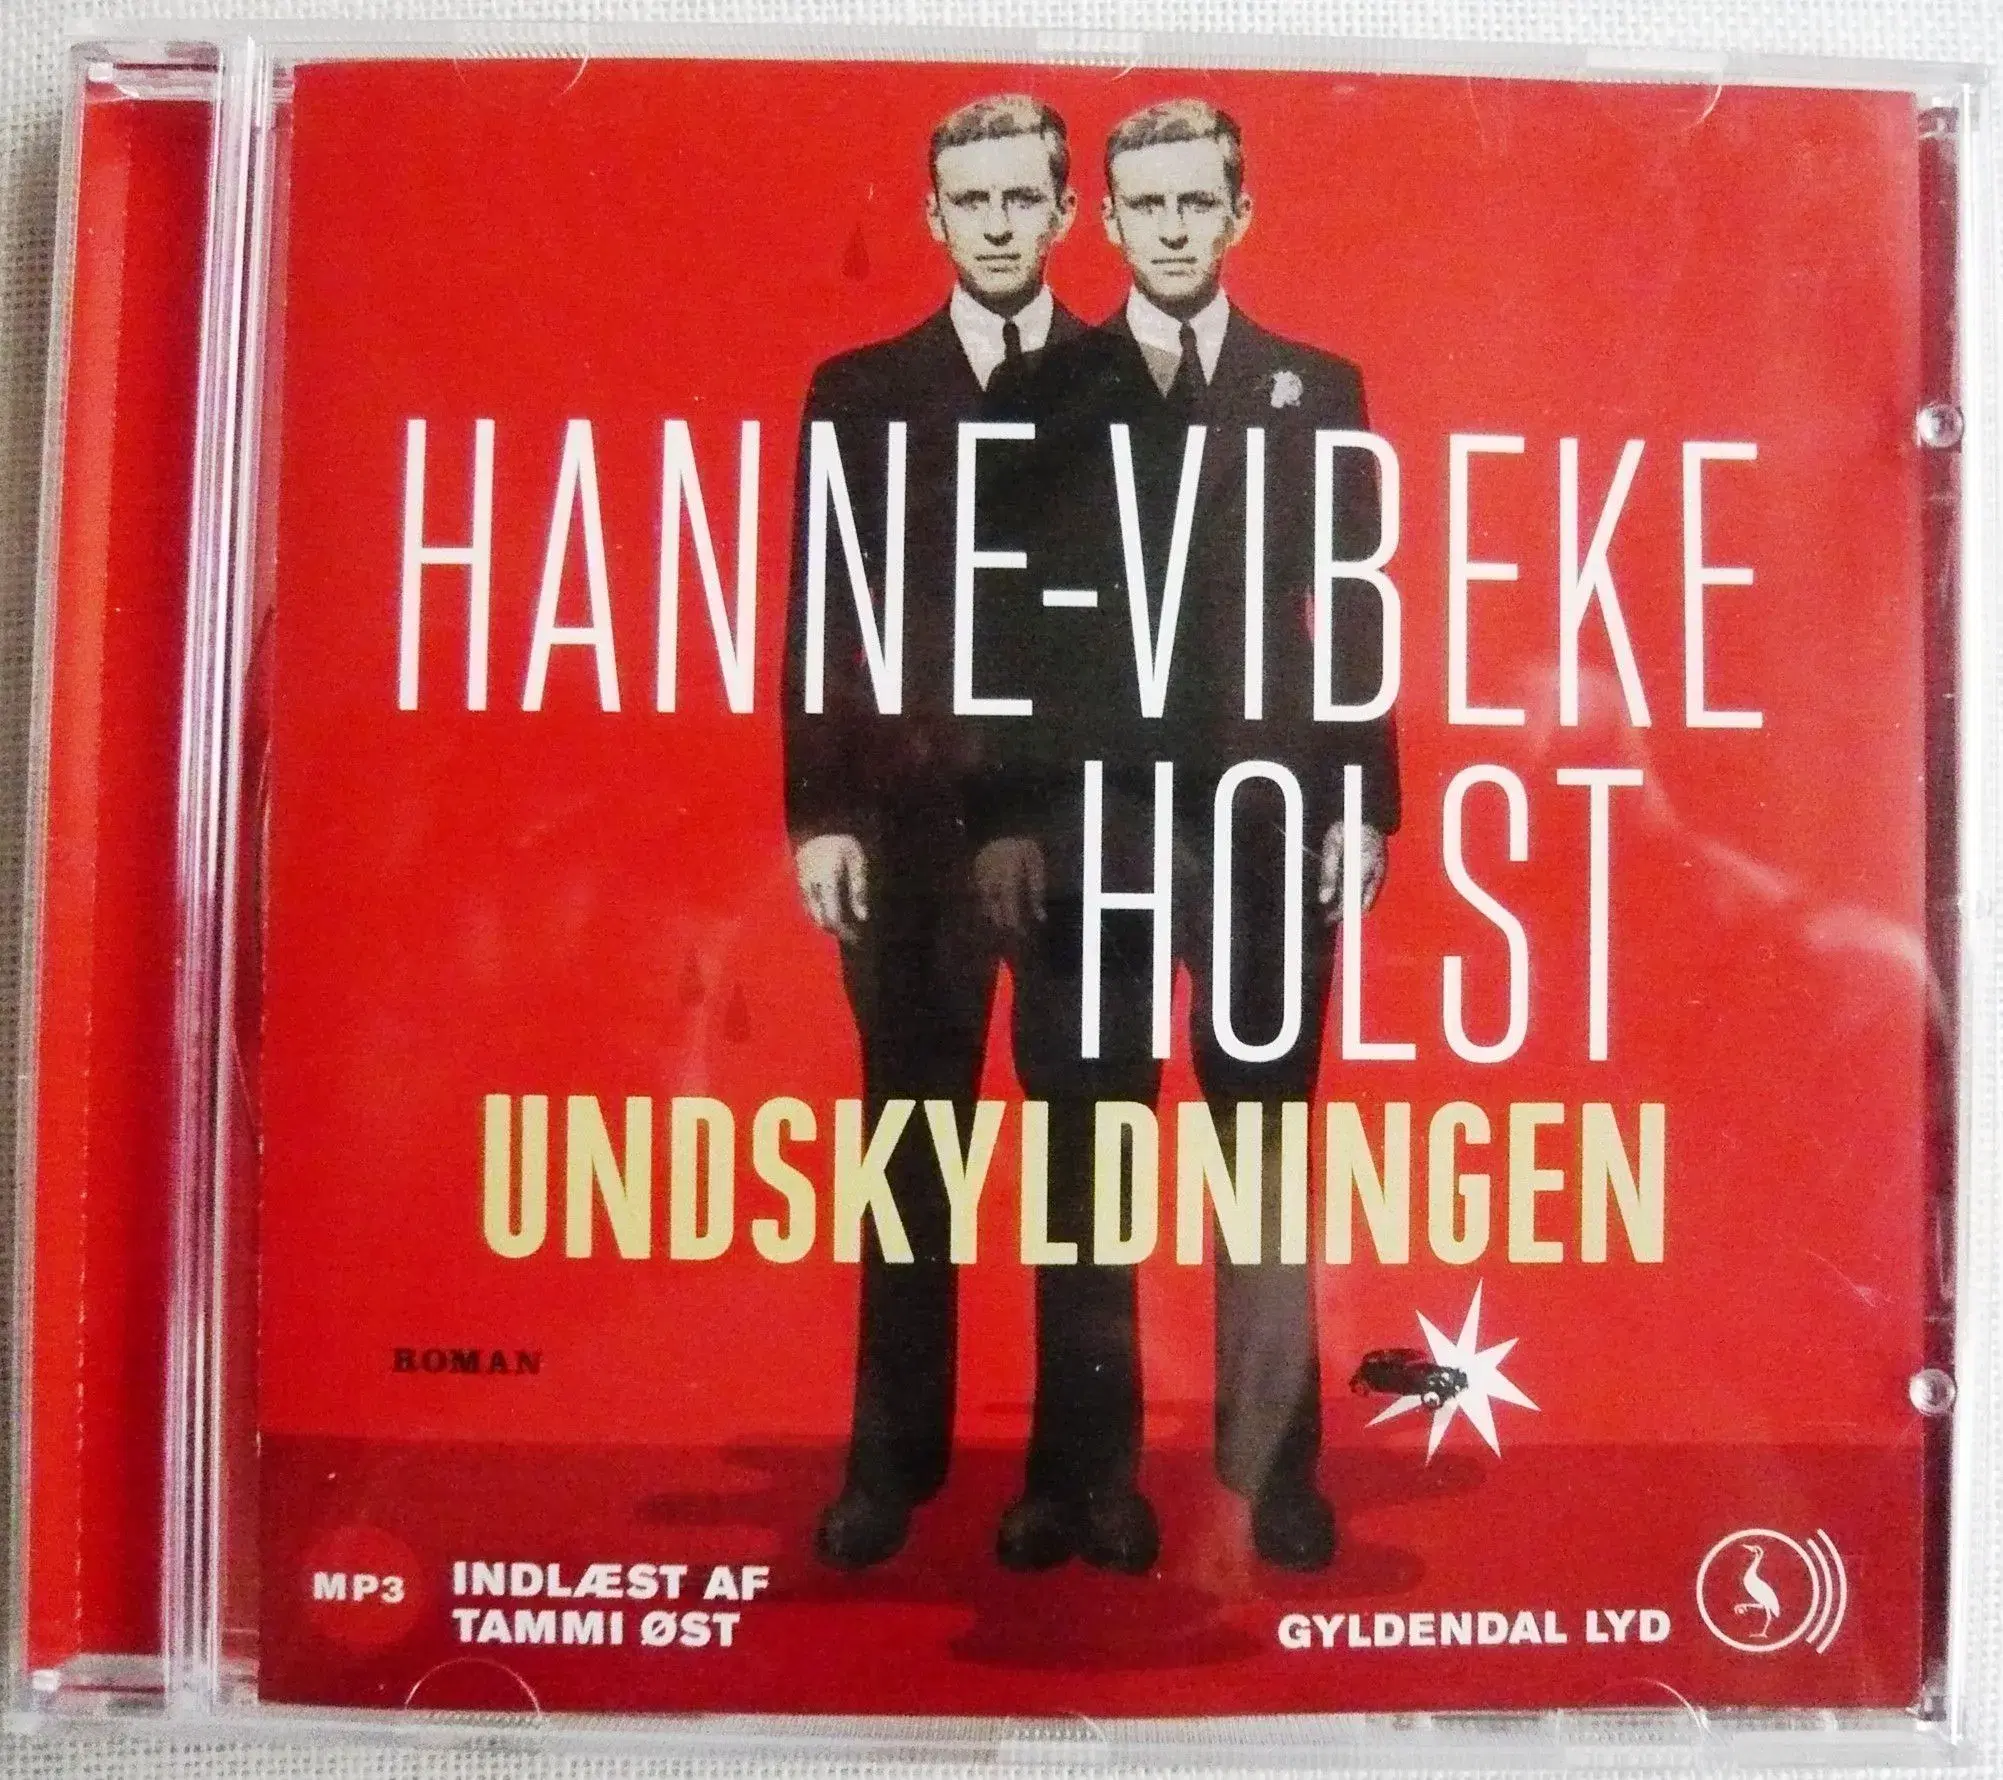 MP3 lydbøger af Hanne-Vibeke Holst